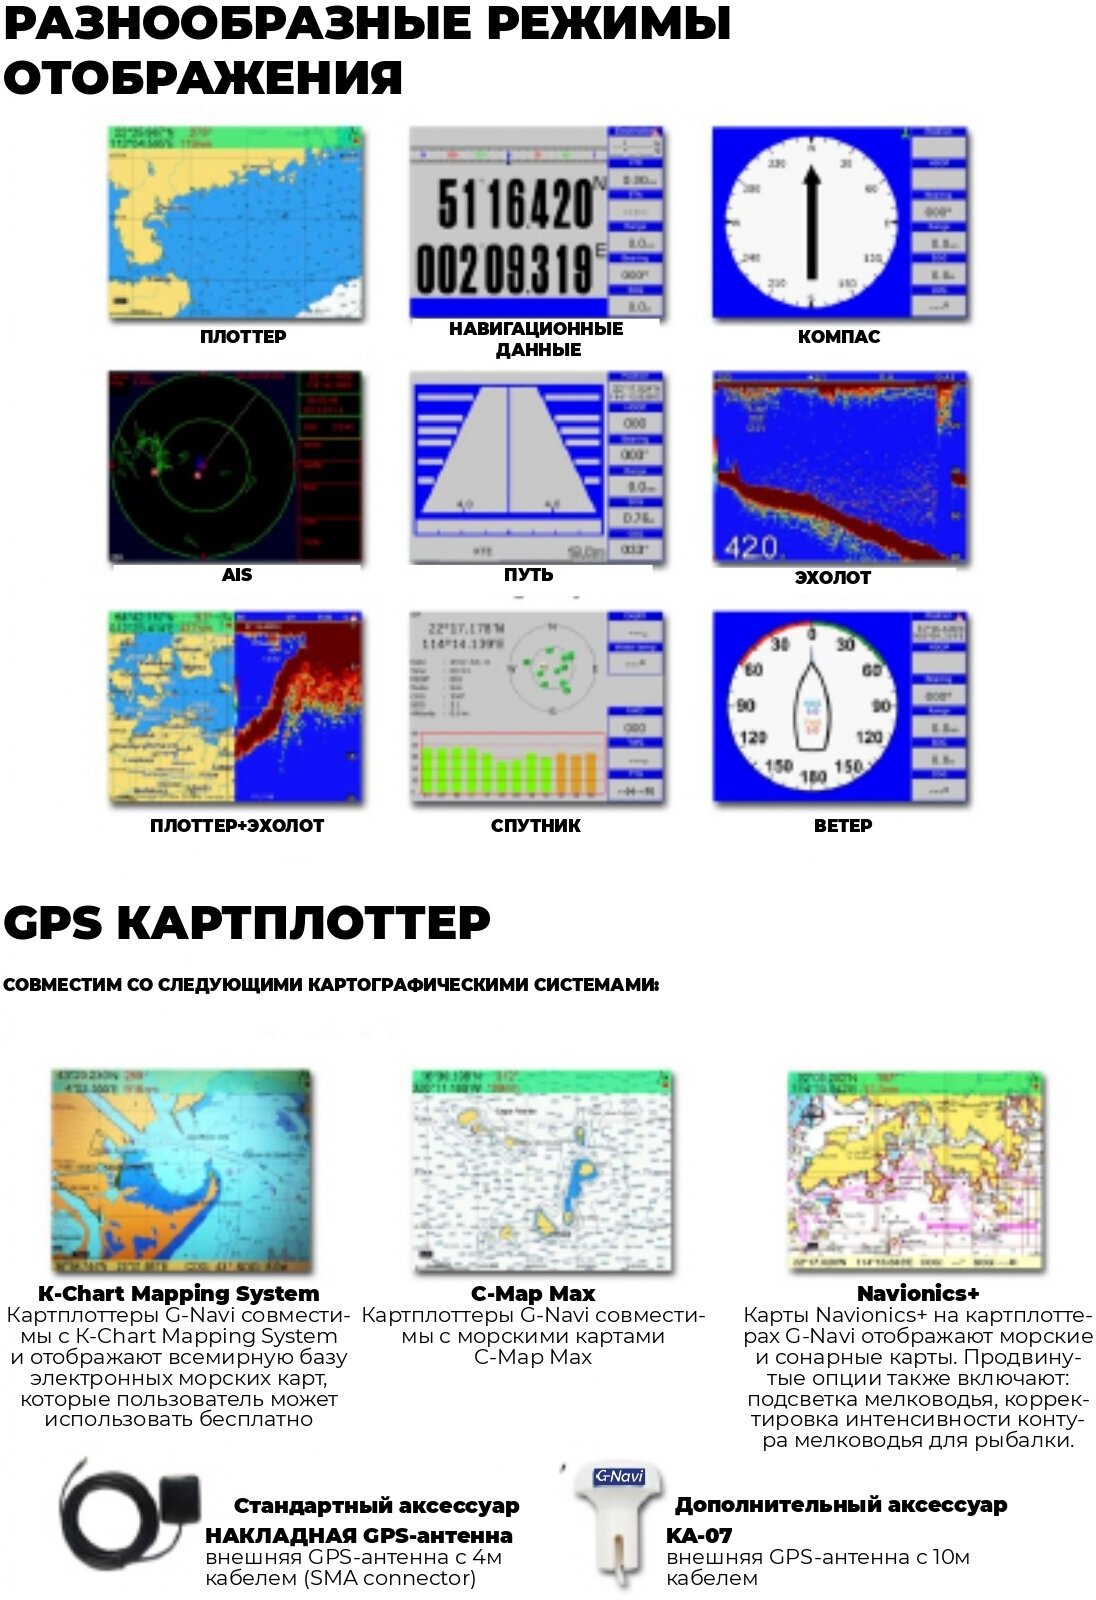 G-navi GPS Плоттер Эхолот KCombo-7